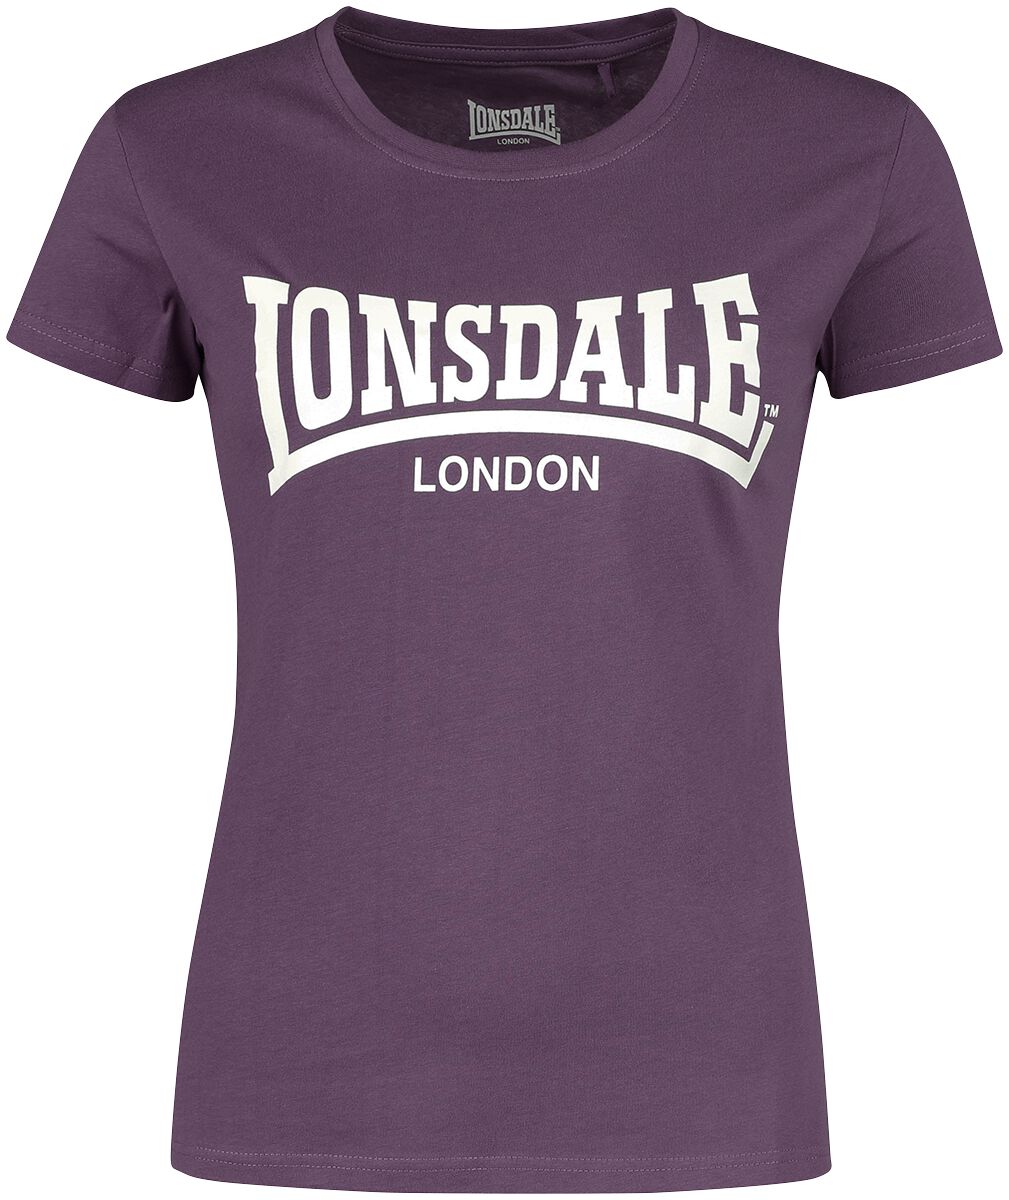 CARTMEL T-Shirt aubergine von Lonsdale London